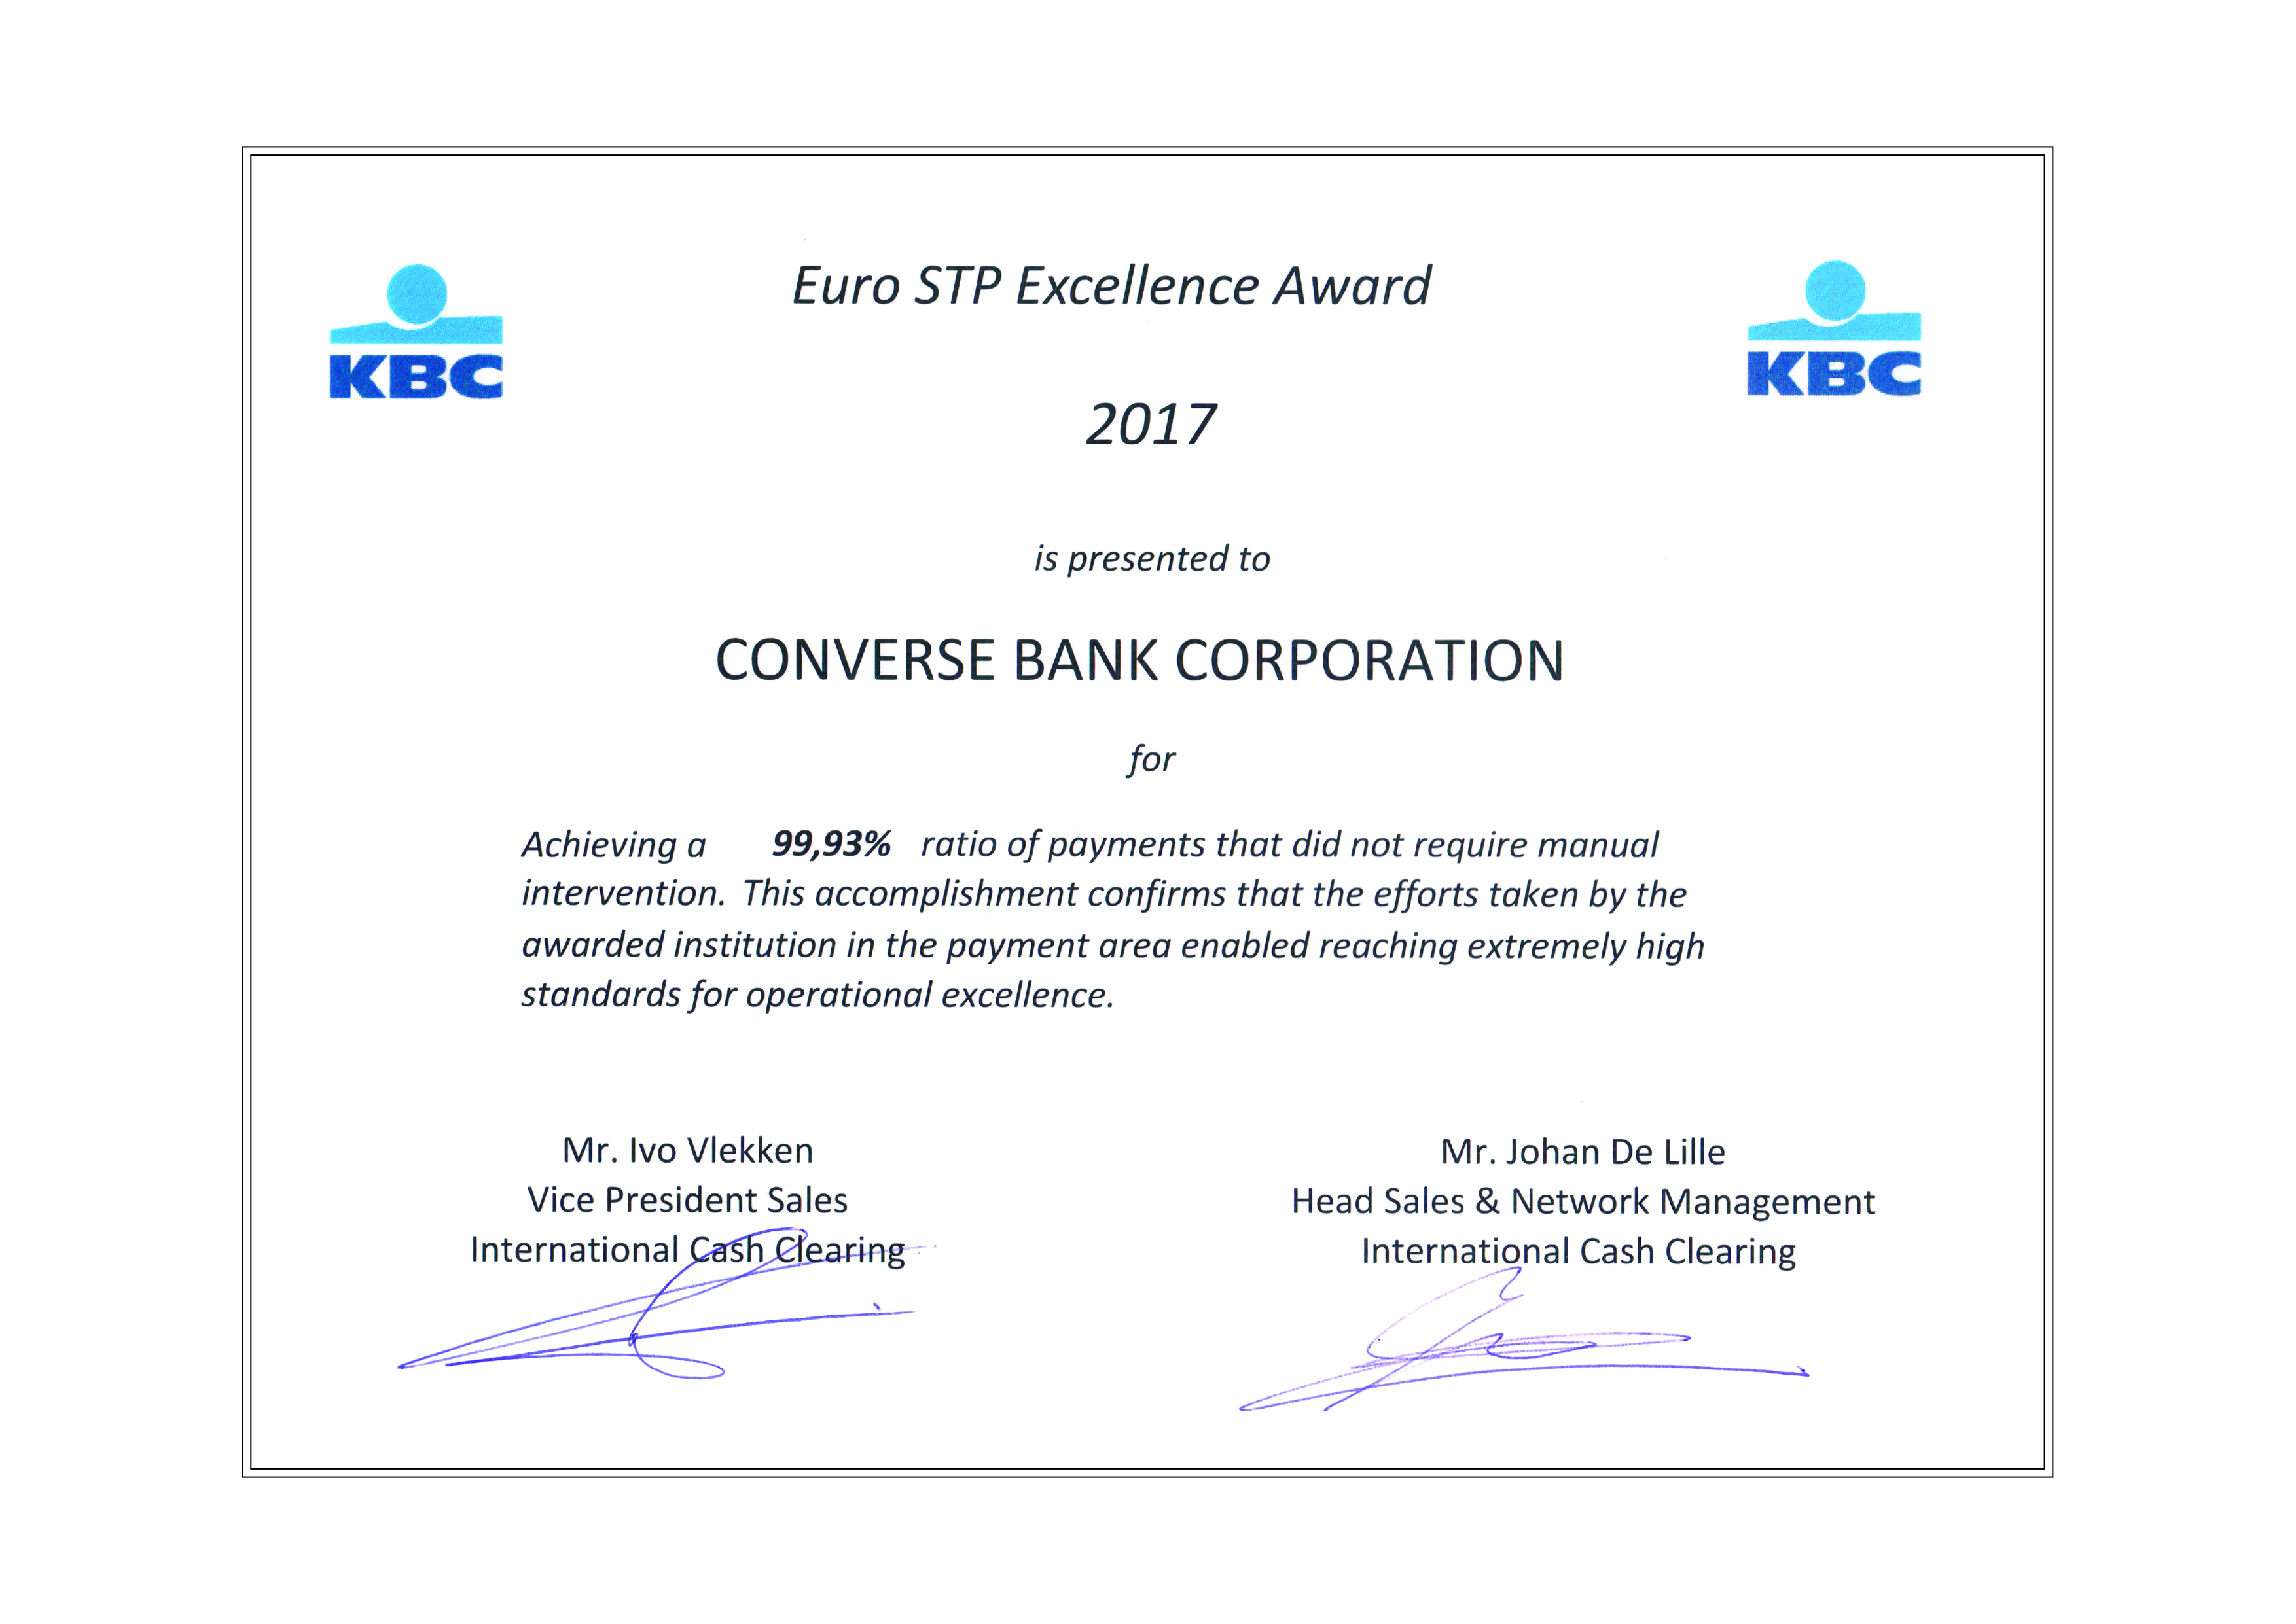 Կոնվերս Բանկն արժանացել է Euro STP Excellence Award 2017 մրցանակին